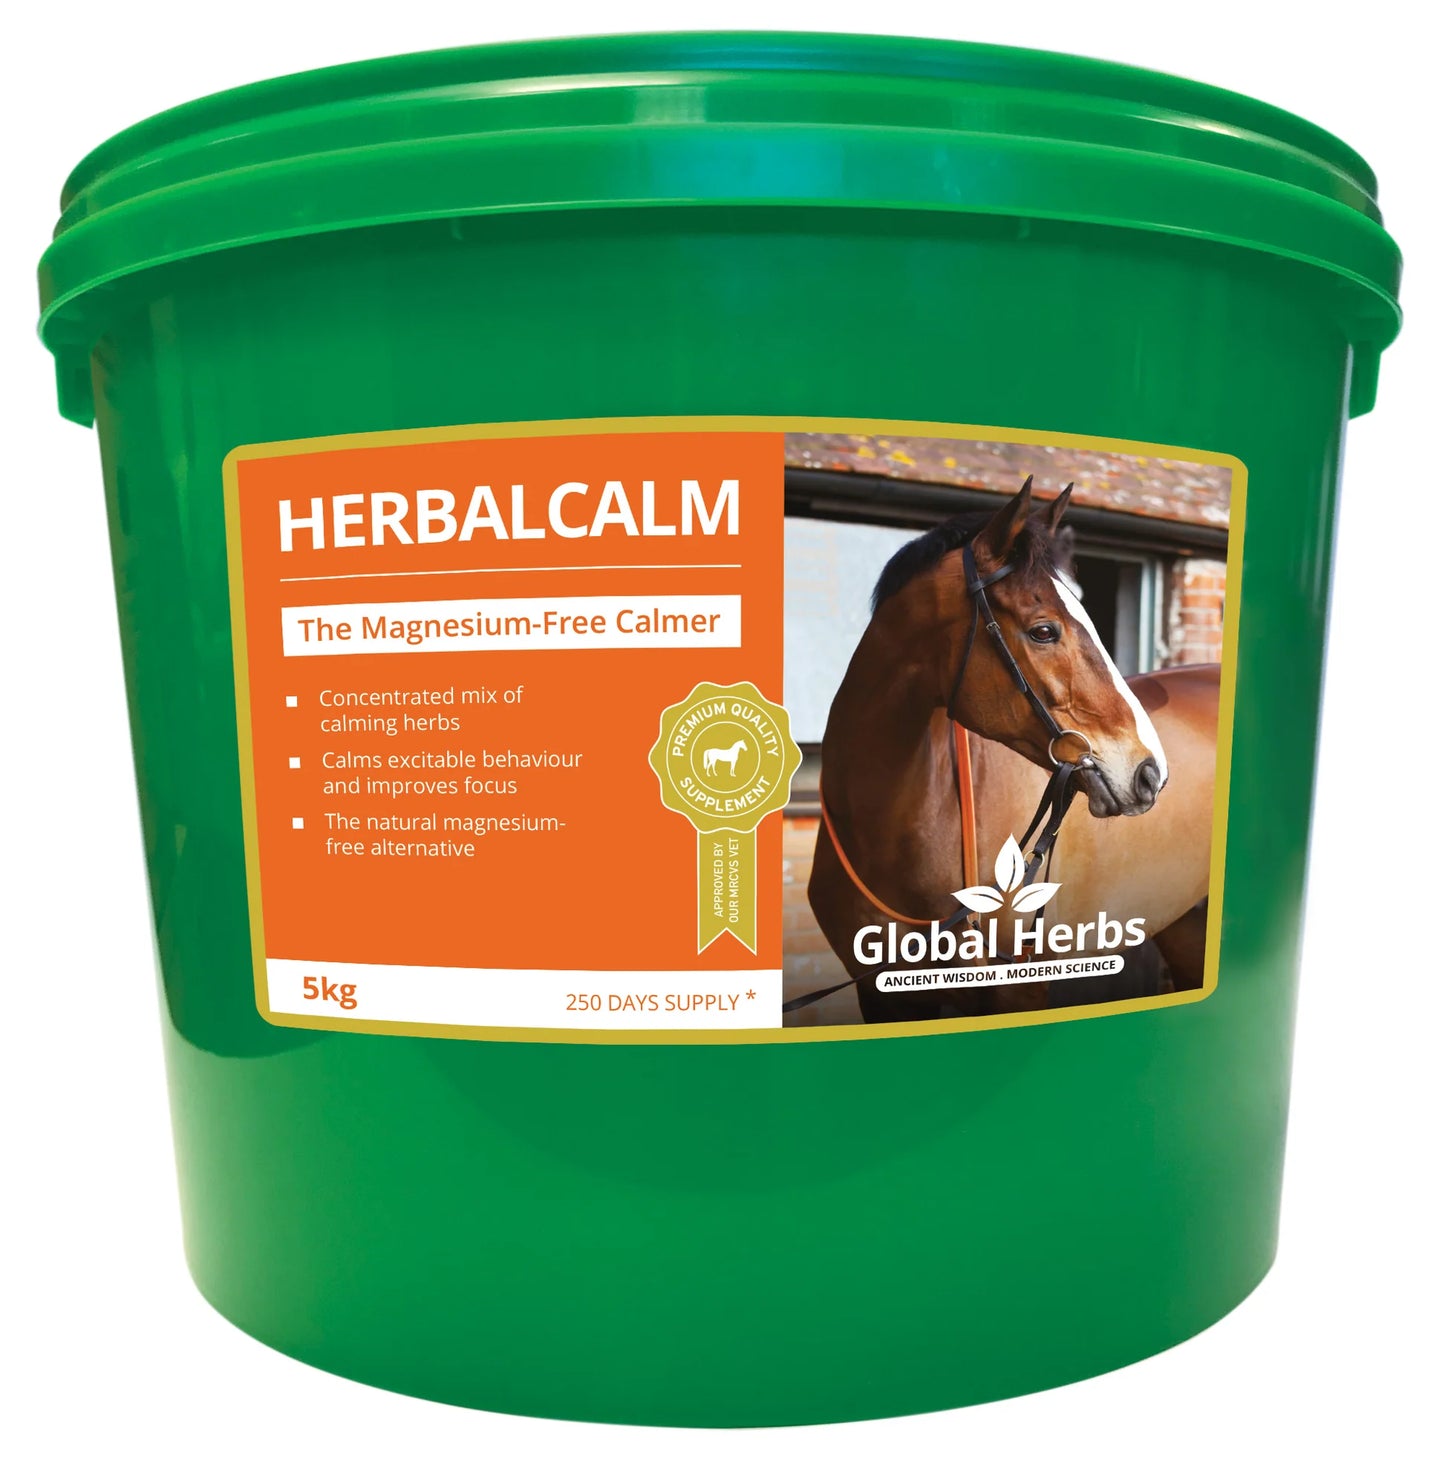 Global Herbs Herbalcalm